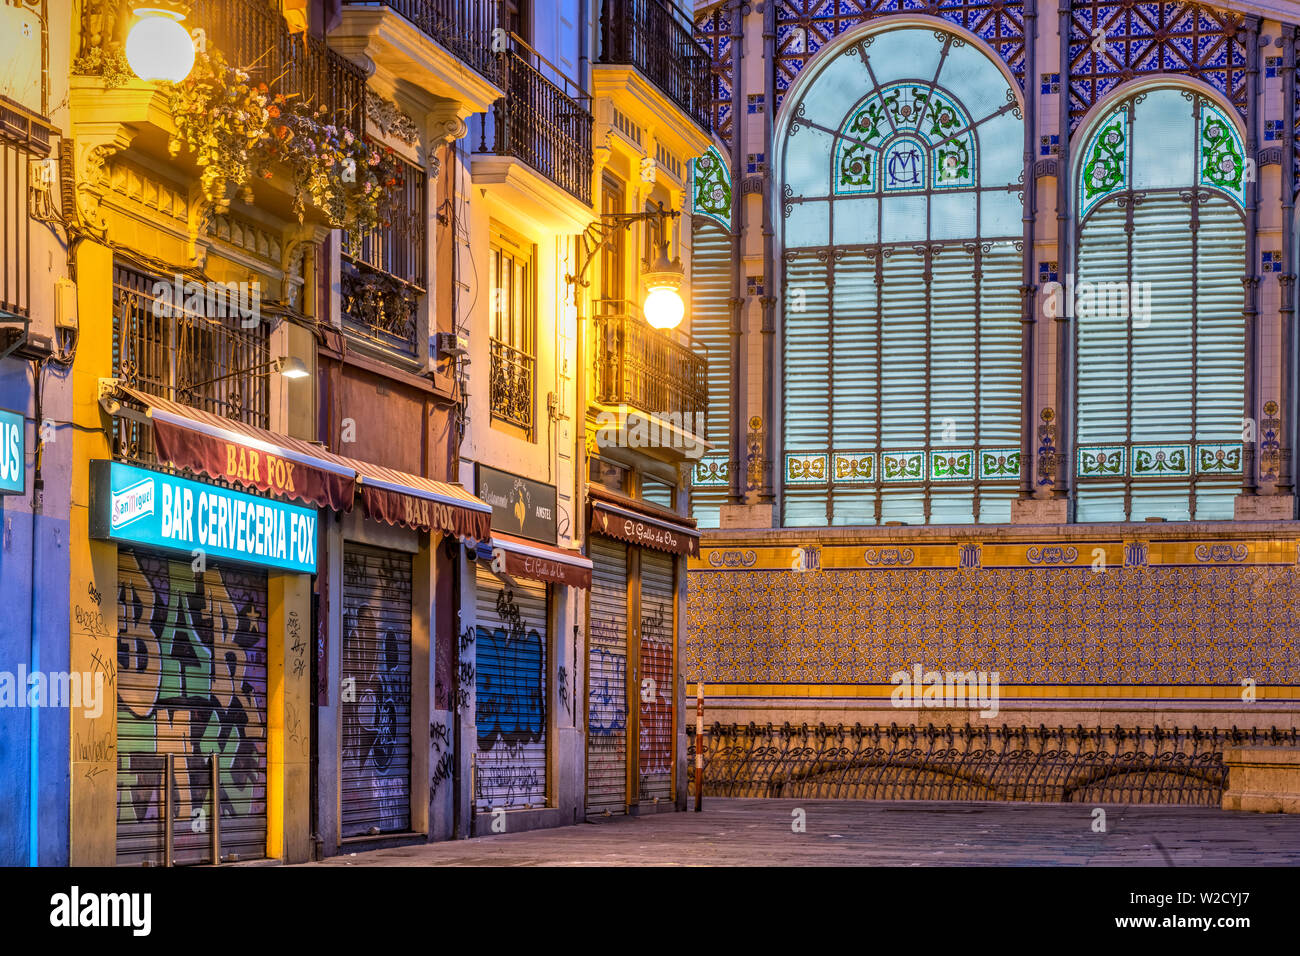 Old town’s street by night, Valencia, Comunidad Valenciana, Spain Stock Photo